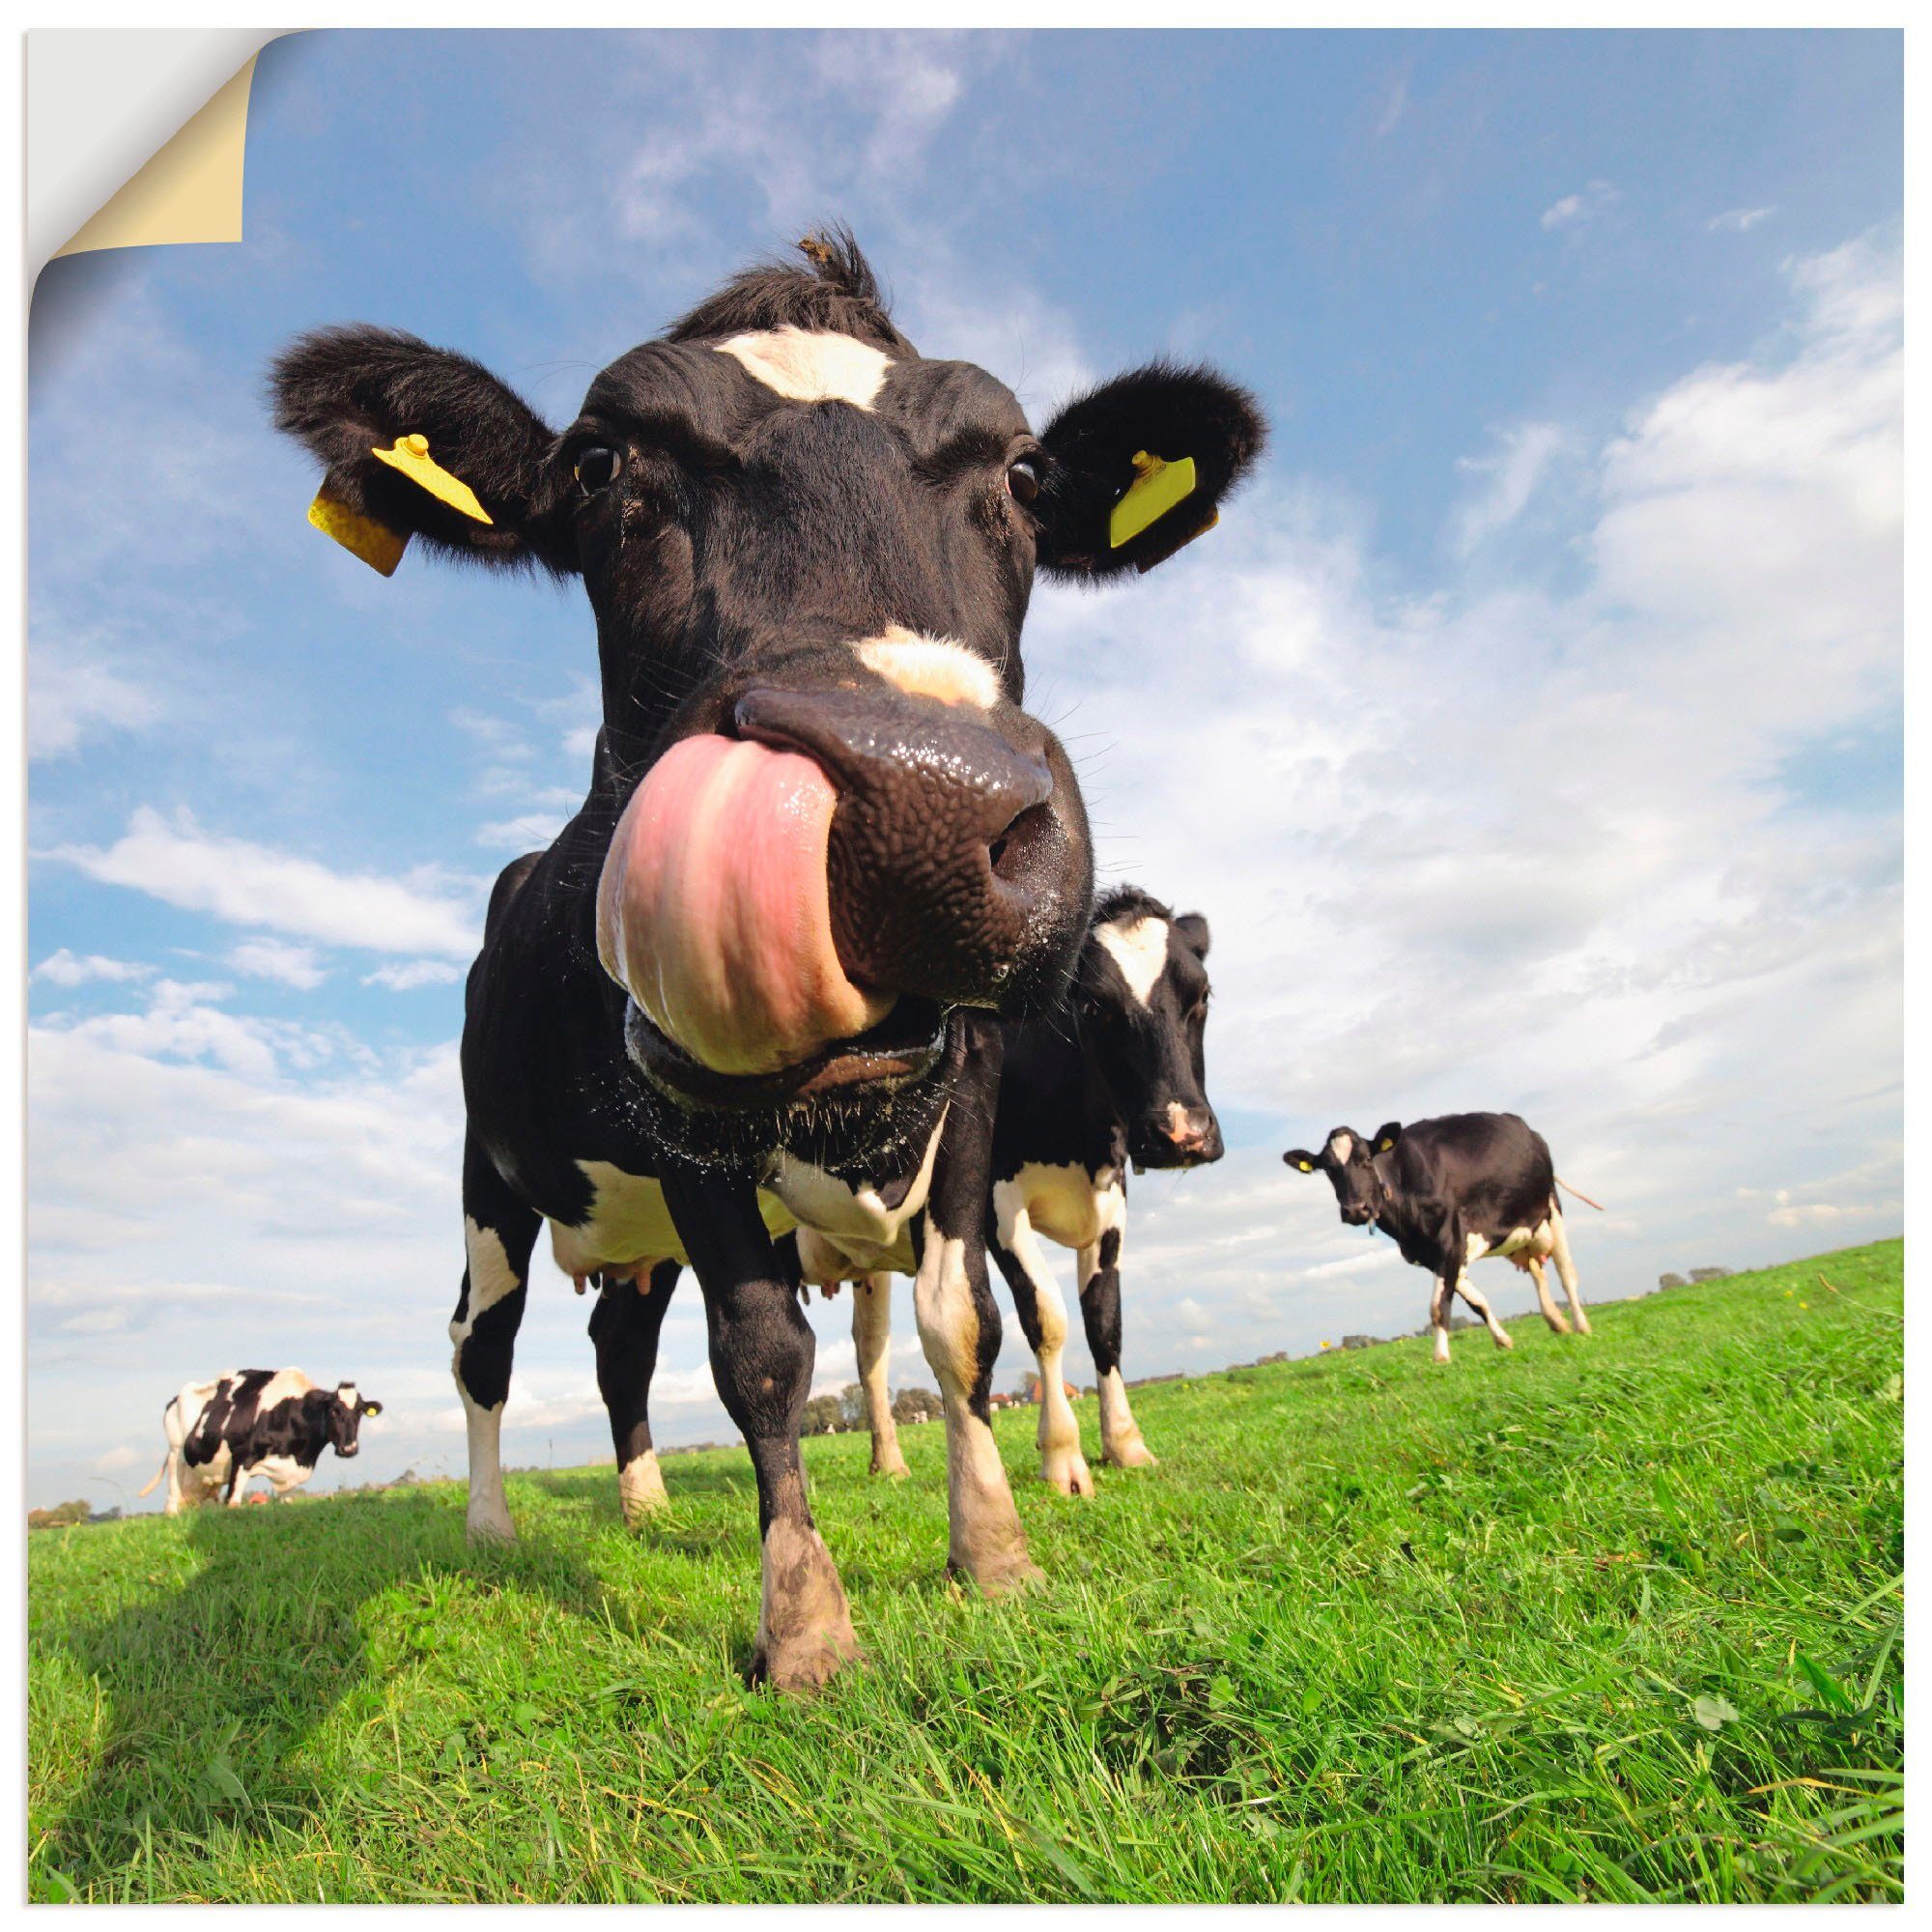 Artland Artprint Holstein-koe met enorme tong in vele afmetingen & productsoorten - artprint van aluminium / artprint voor buiten, artprint op linnen, poster, muursticker / wandfol